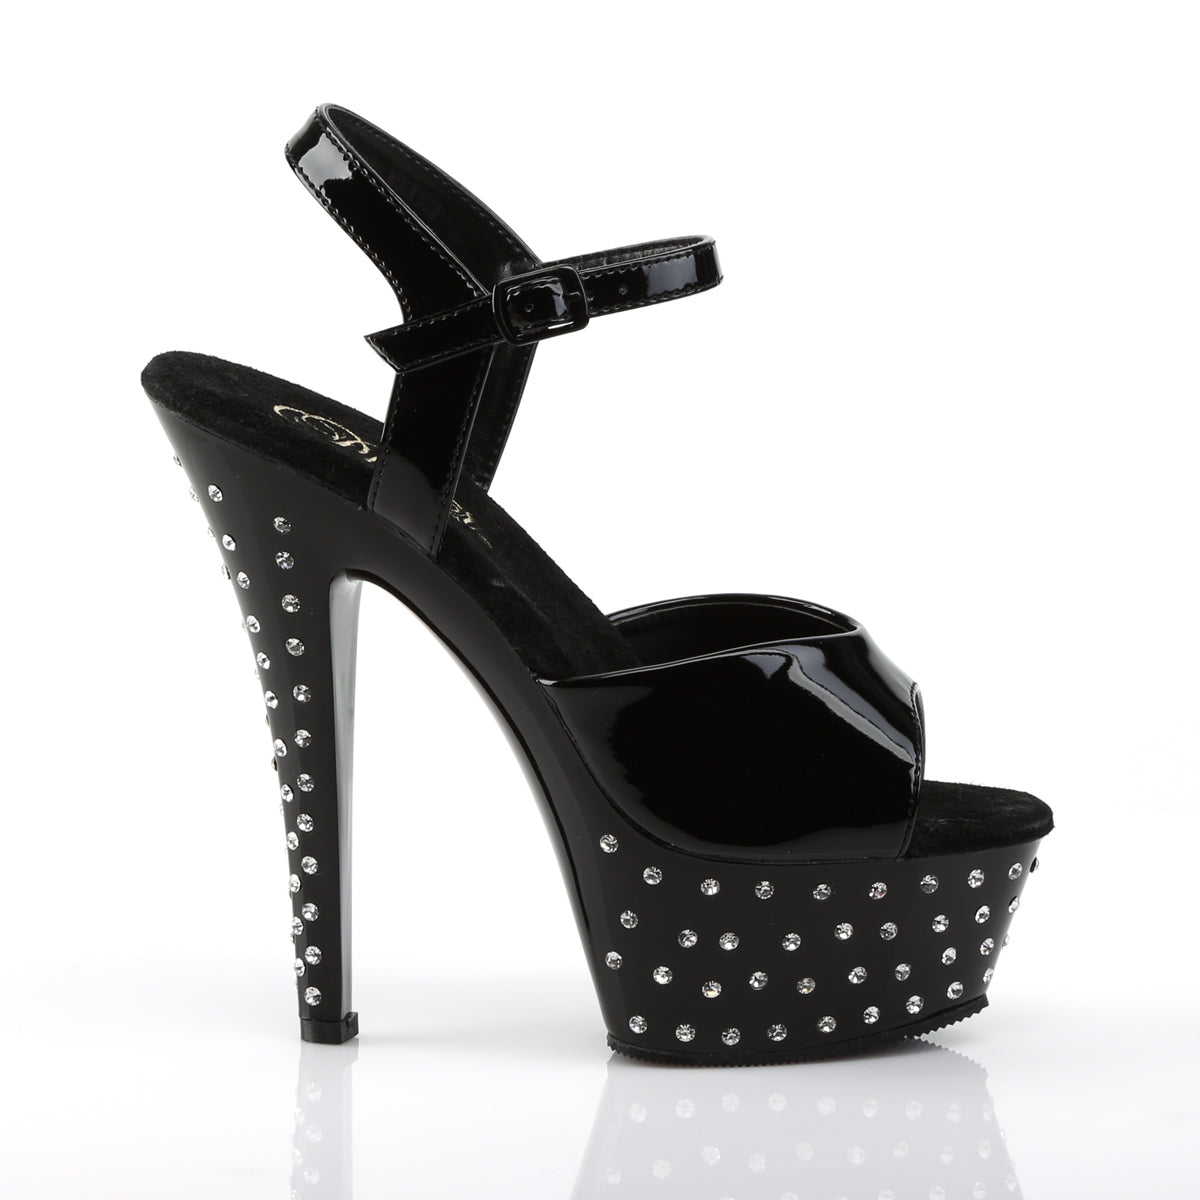 STARDUST-609 Black Ankle Peep Toe High Heel